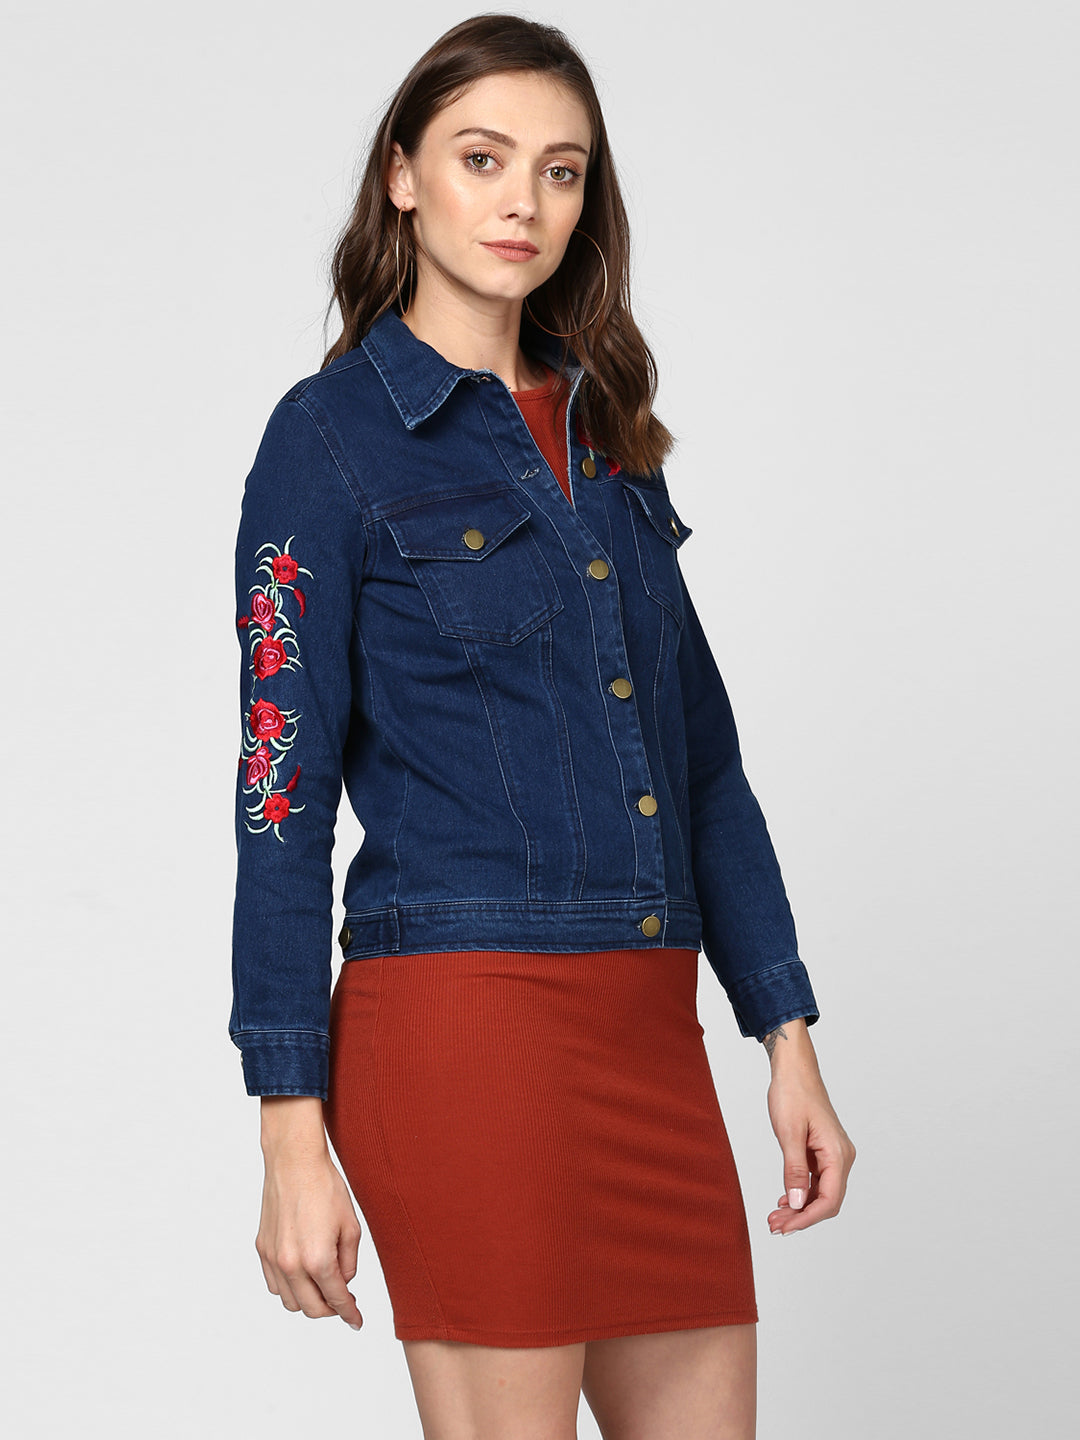 Women's Embroidered Blue Denim Jacket